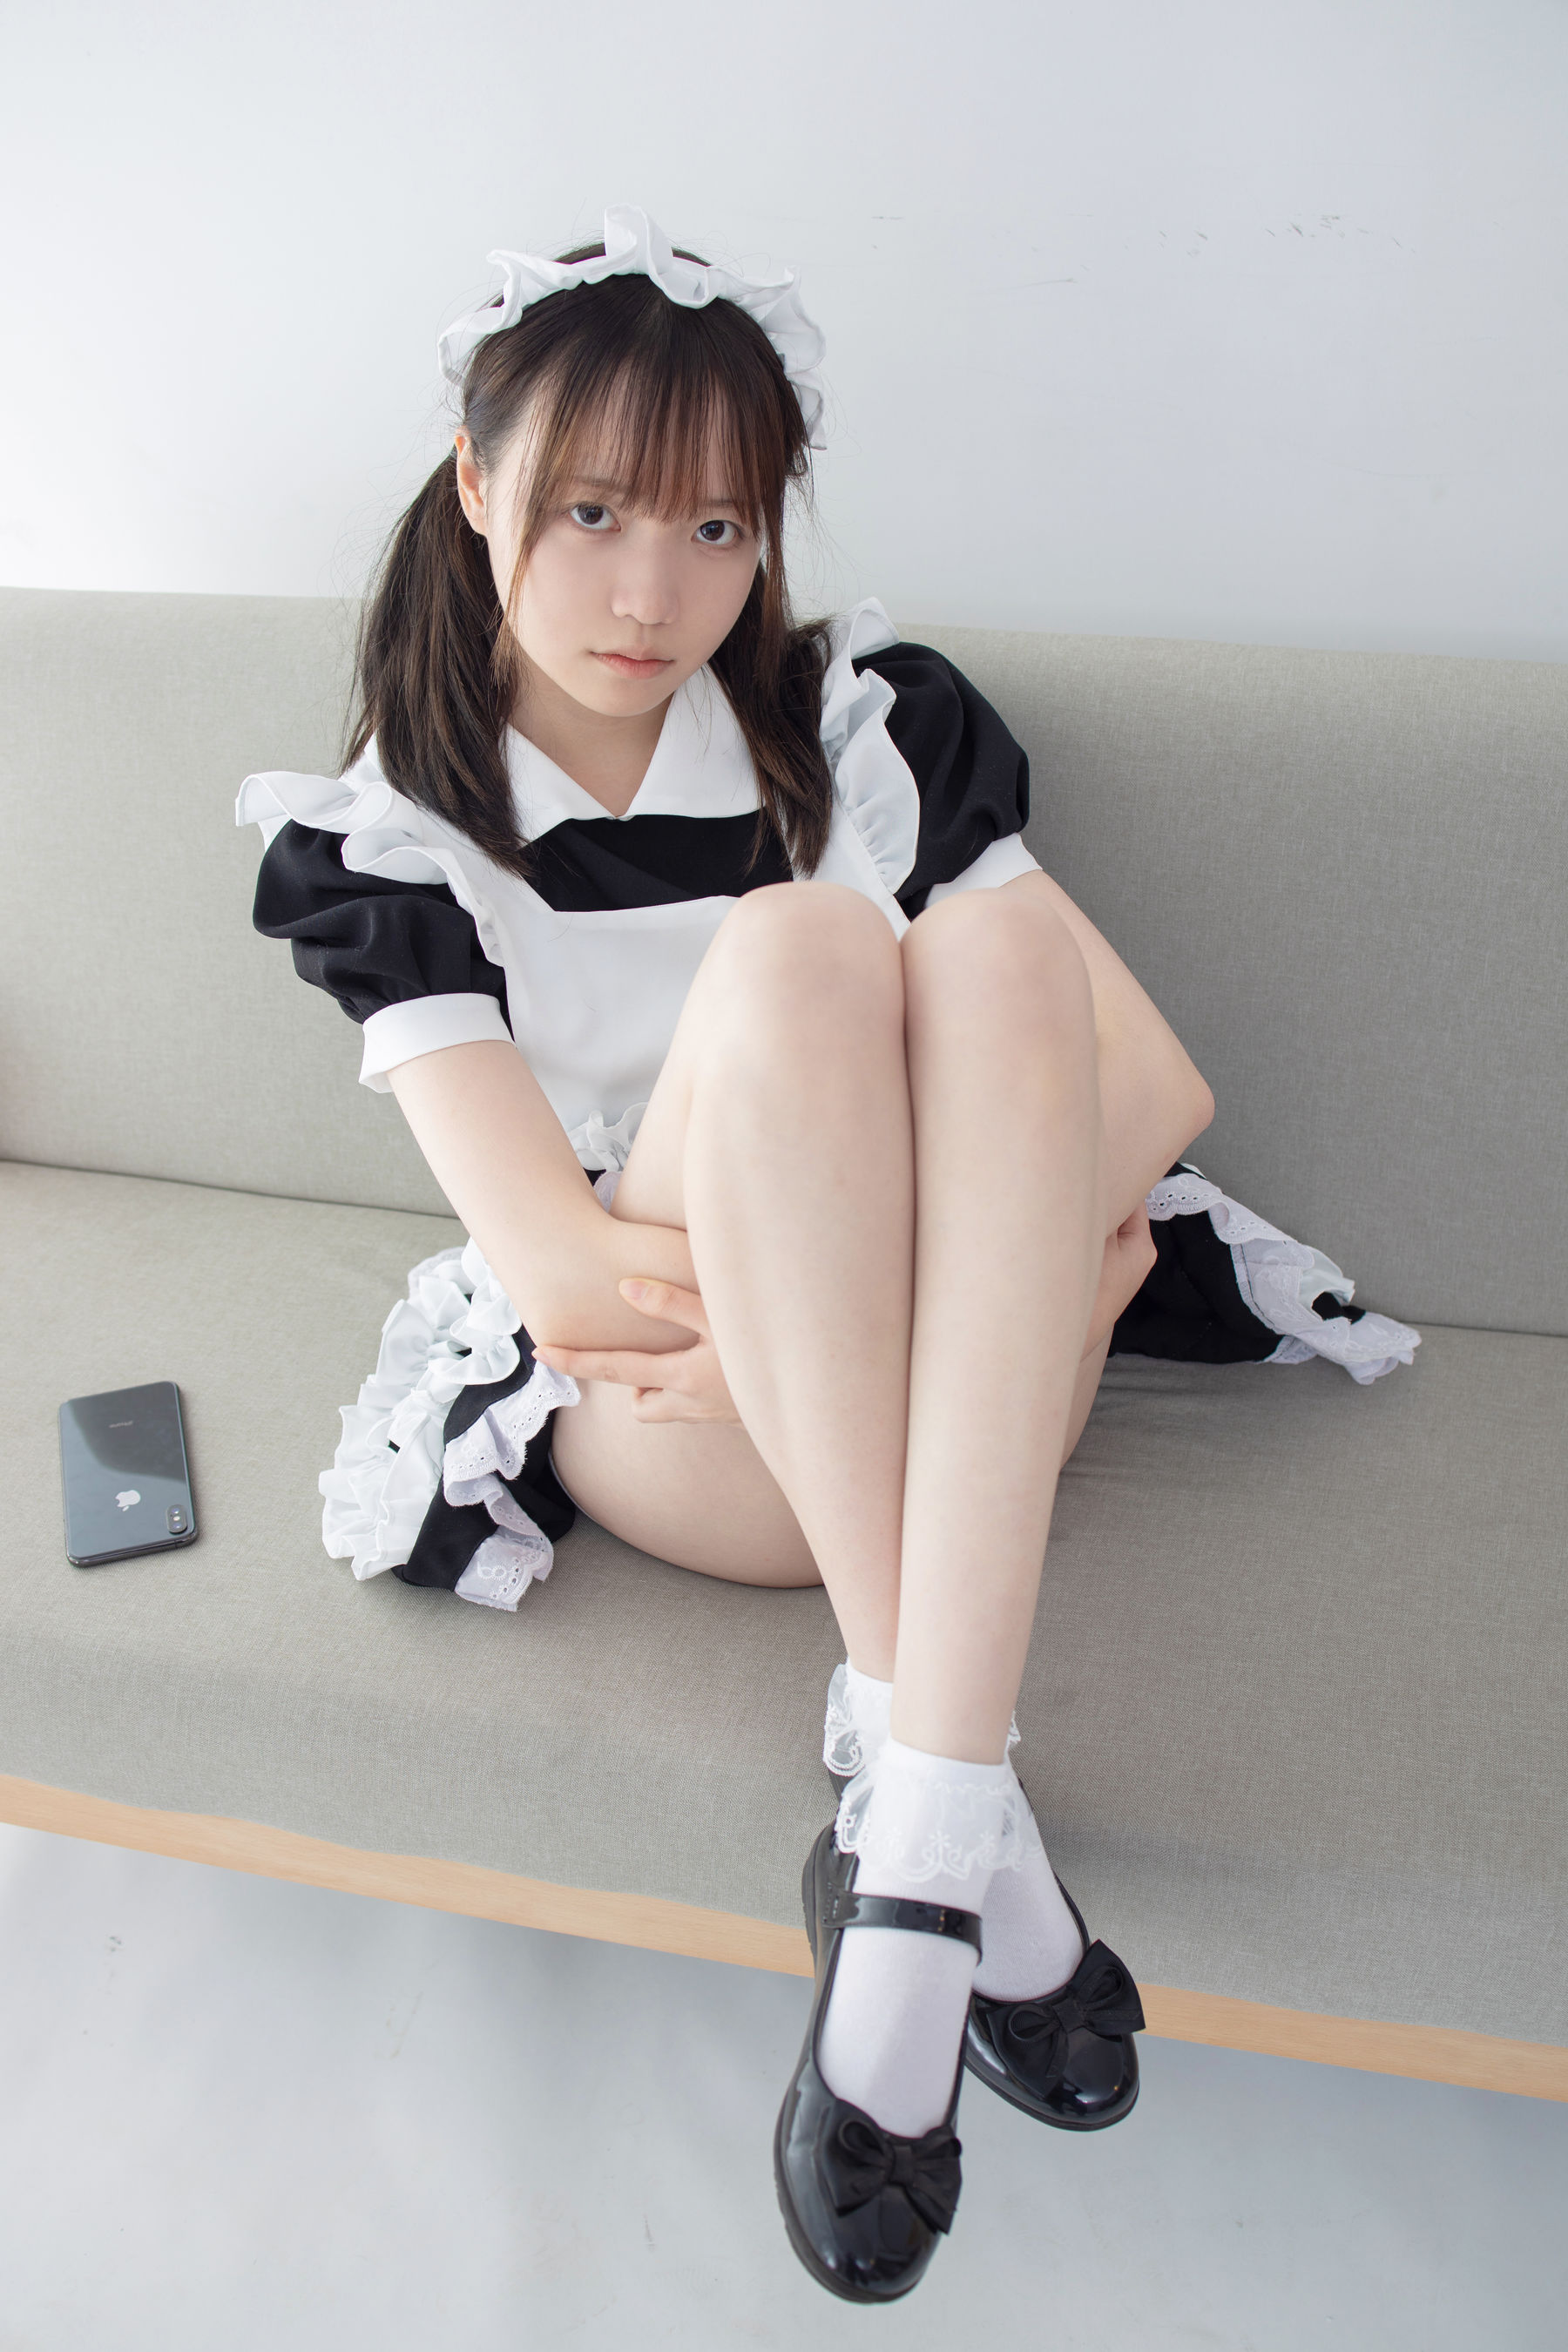 Aika《蕾丝花边短袜女仆》 [森萝财团] JKFUN-053 写真集(5)